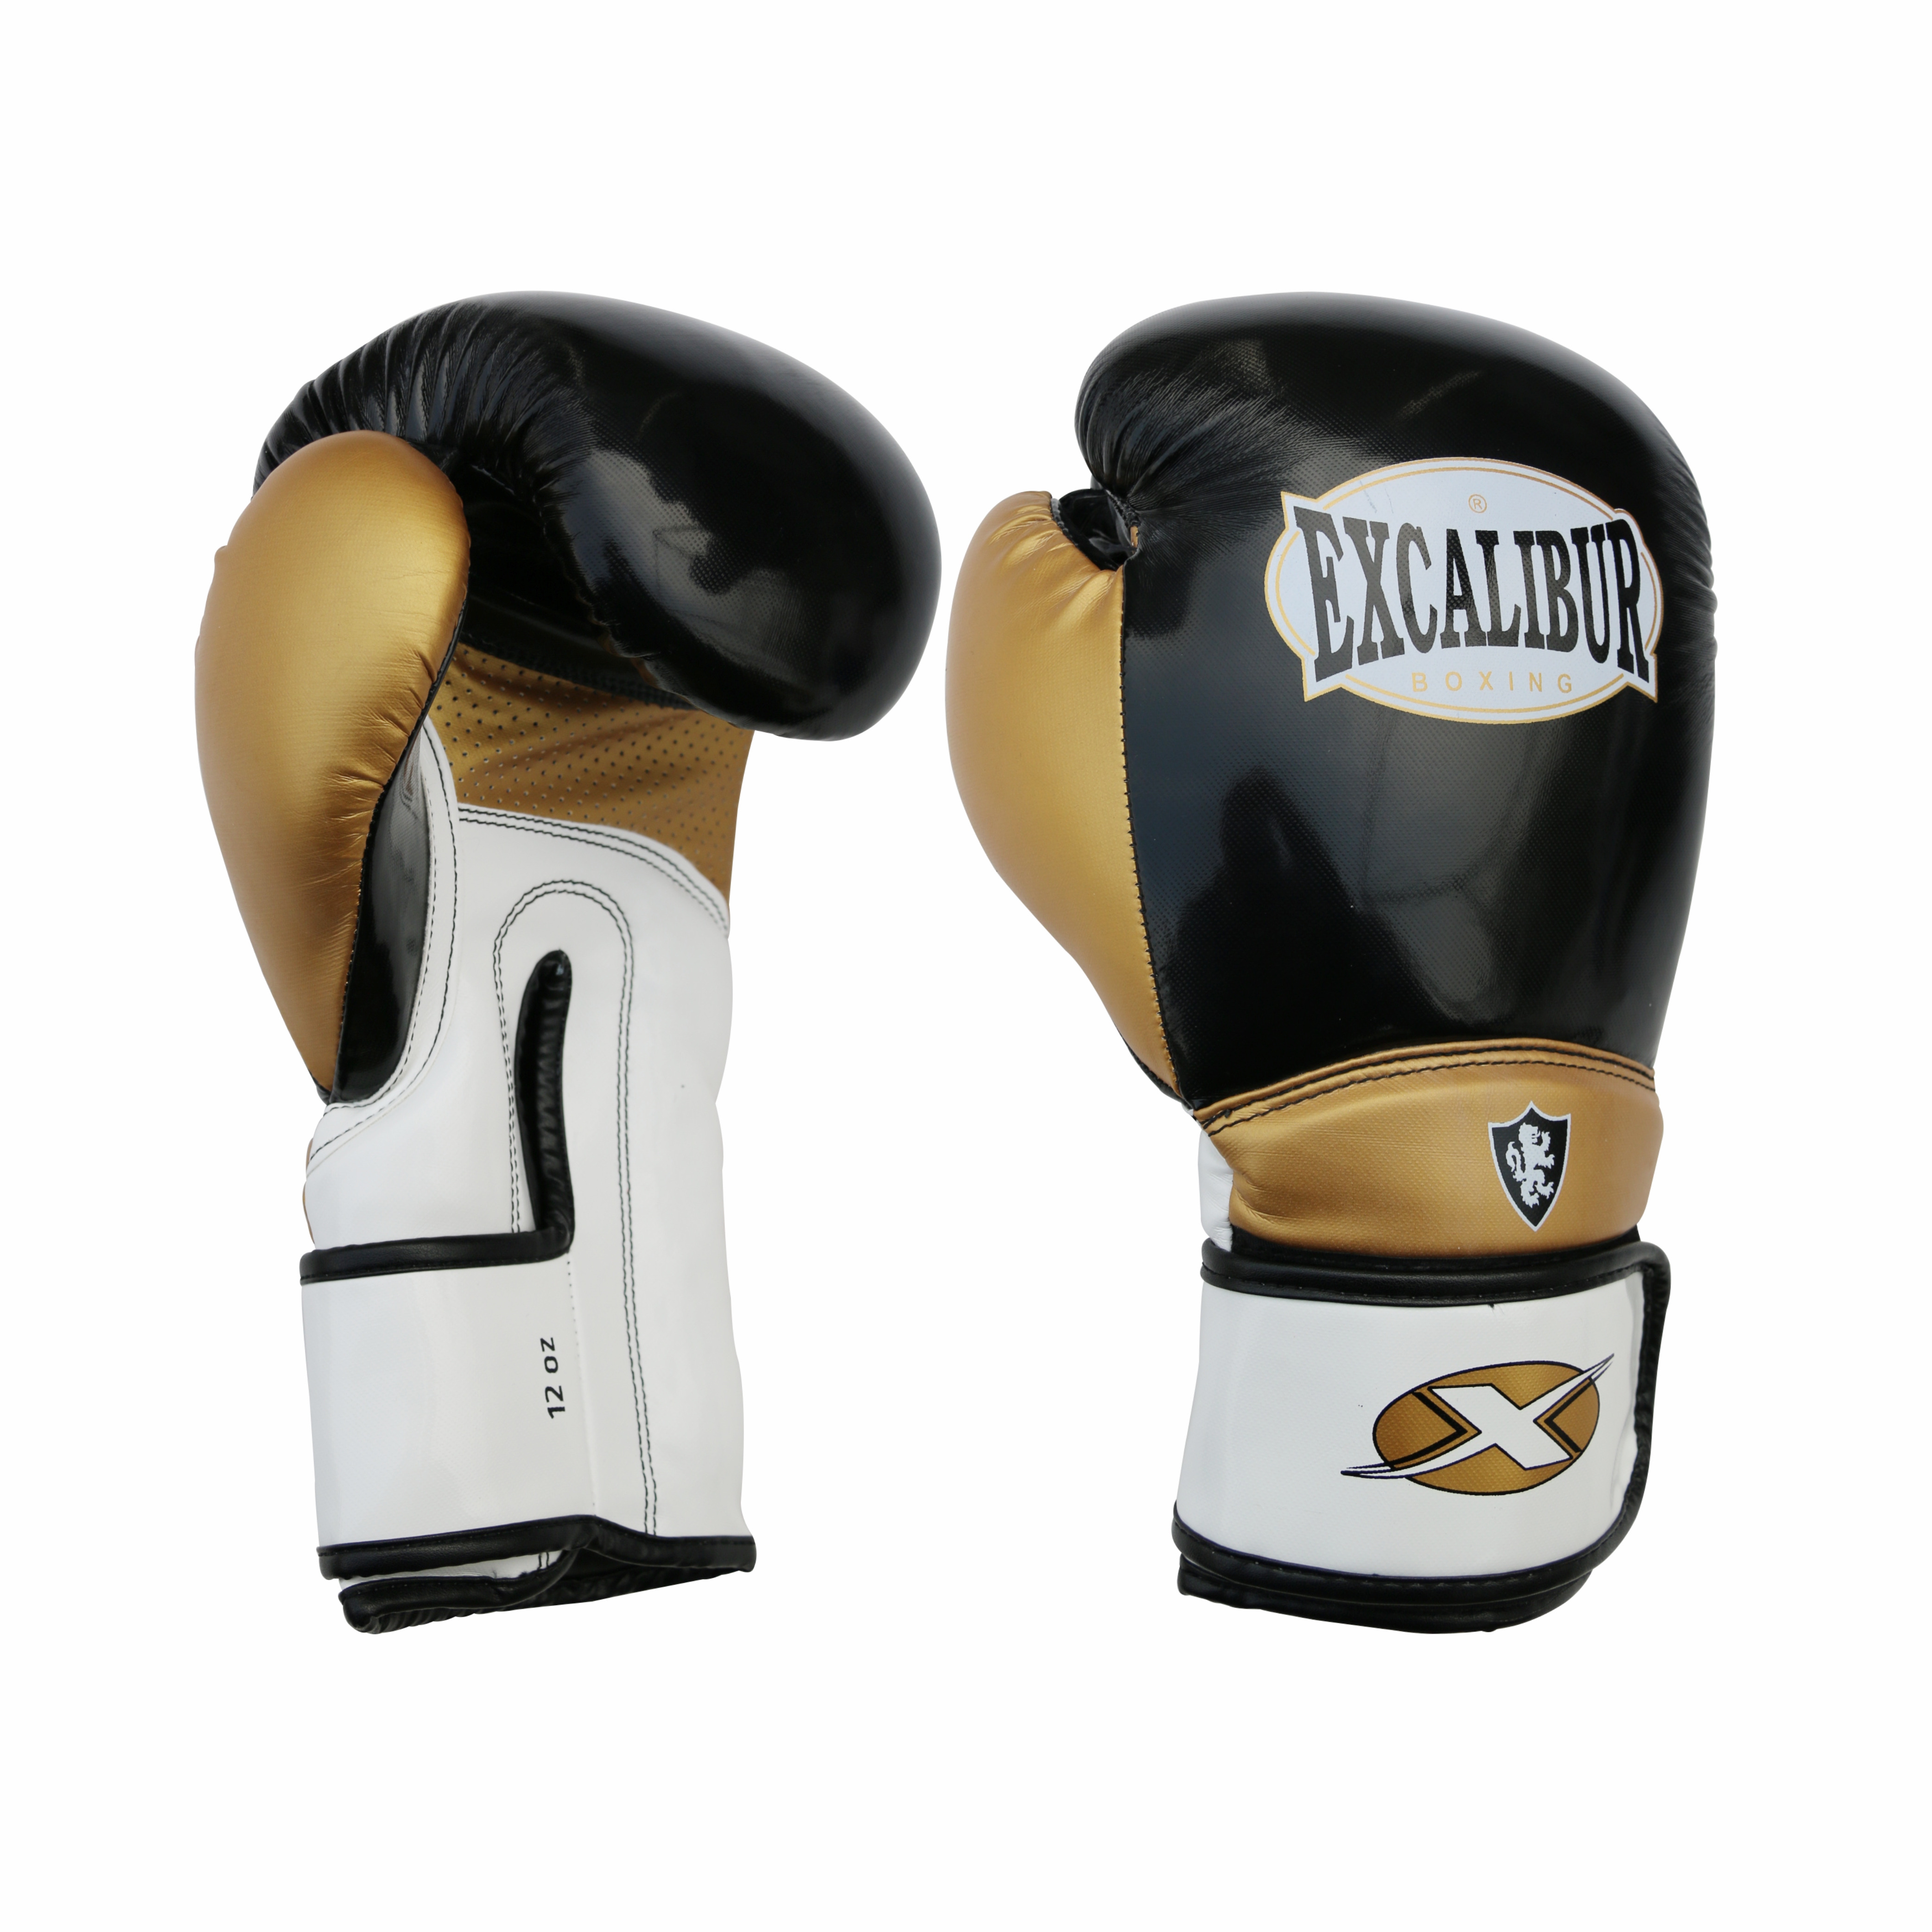 Ceramitec Boxing Gloves